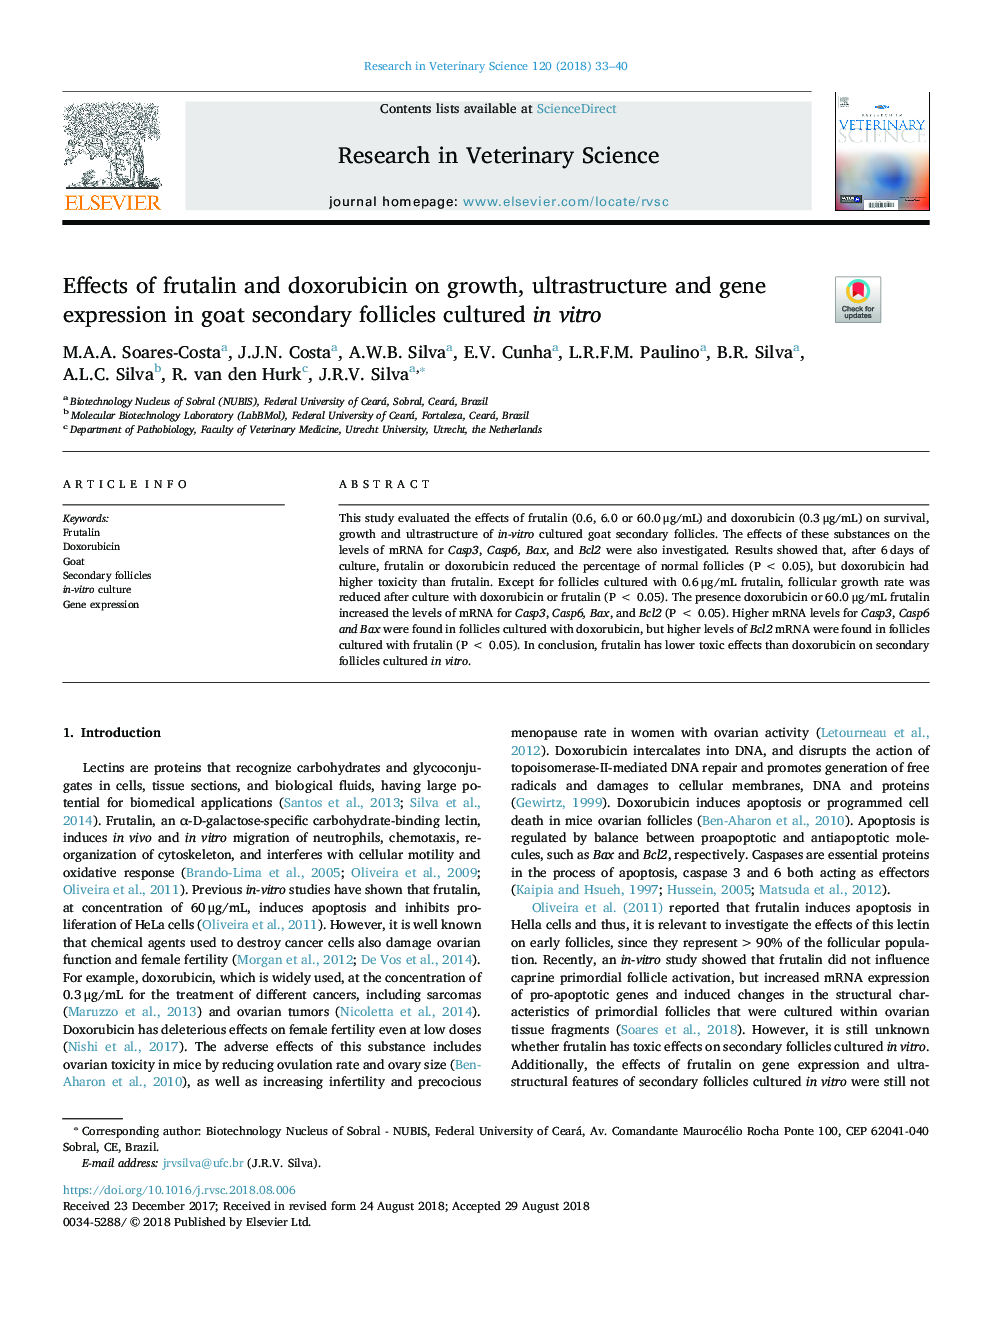 اثرات فتورالین و دوکسوروبیسین بر رشد، فراصوت و بیان ژن در فولیکول های ثانویه بز در شرایط آزمایشگاهی